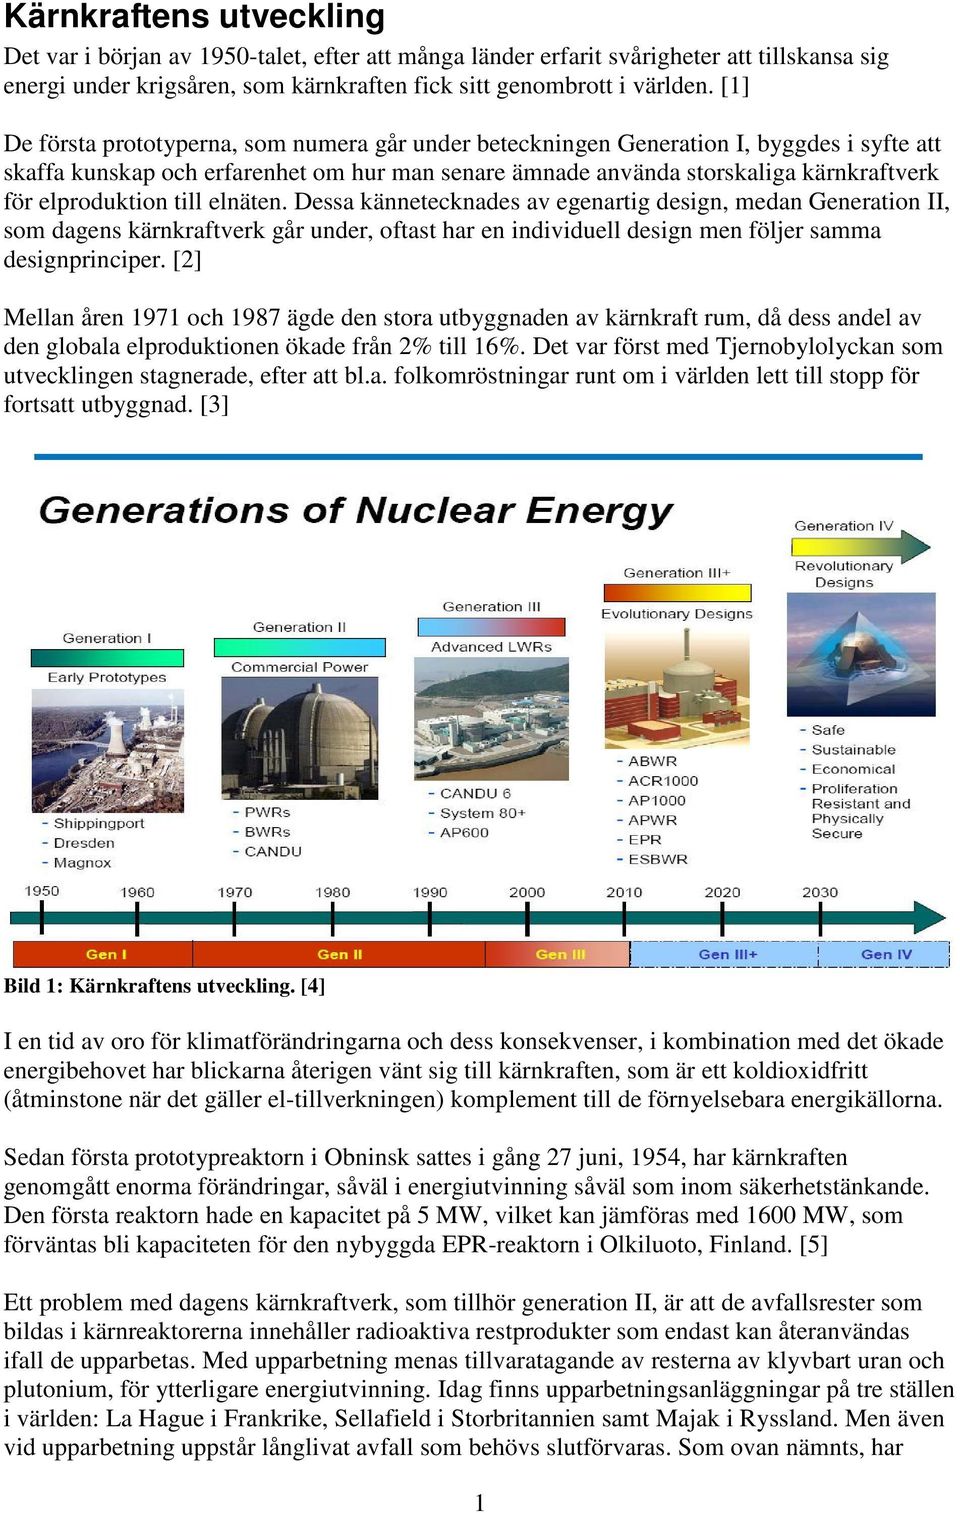 elproduktion till elnäten. Dessa kännetecknades av egenartig design, medan Generation II, som dagens kärnkraftverk går under, oftast har en individuell design men följer samma designprinciper.